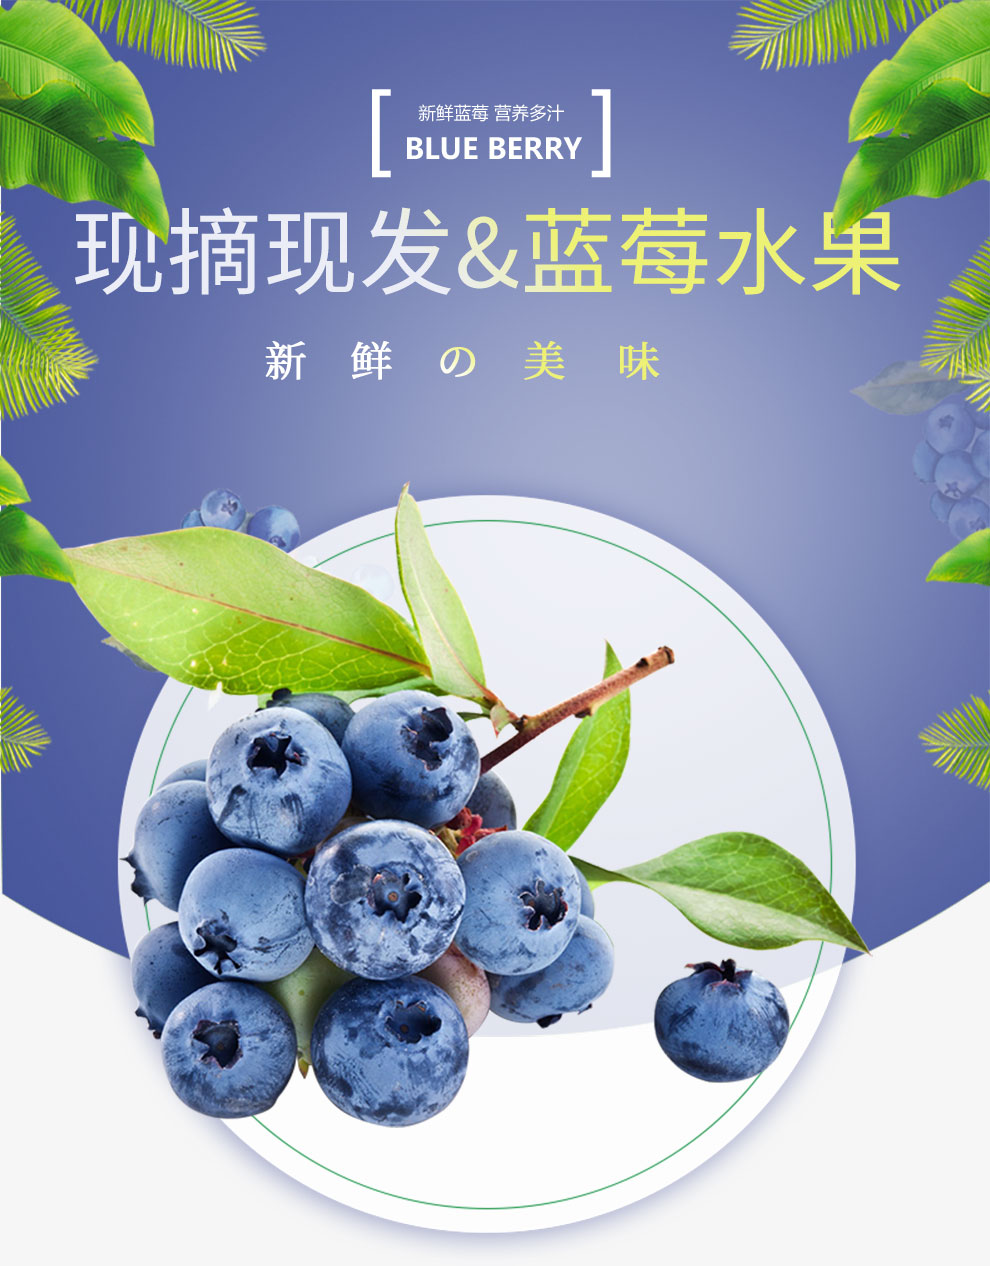 蓝莓_01.jpg